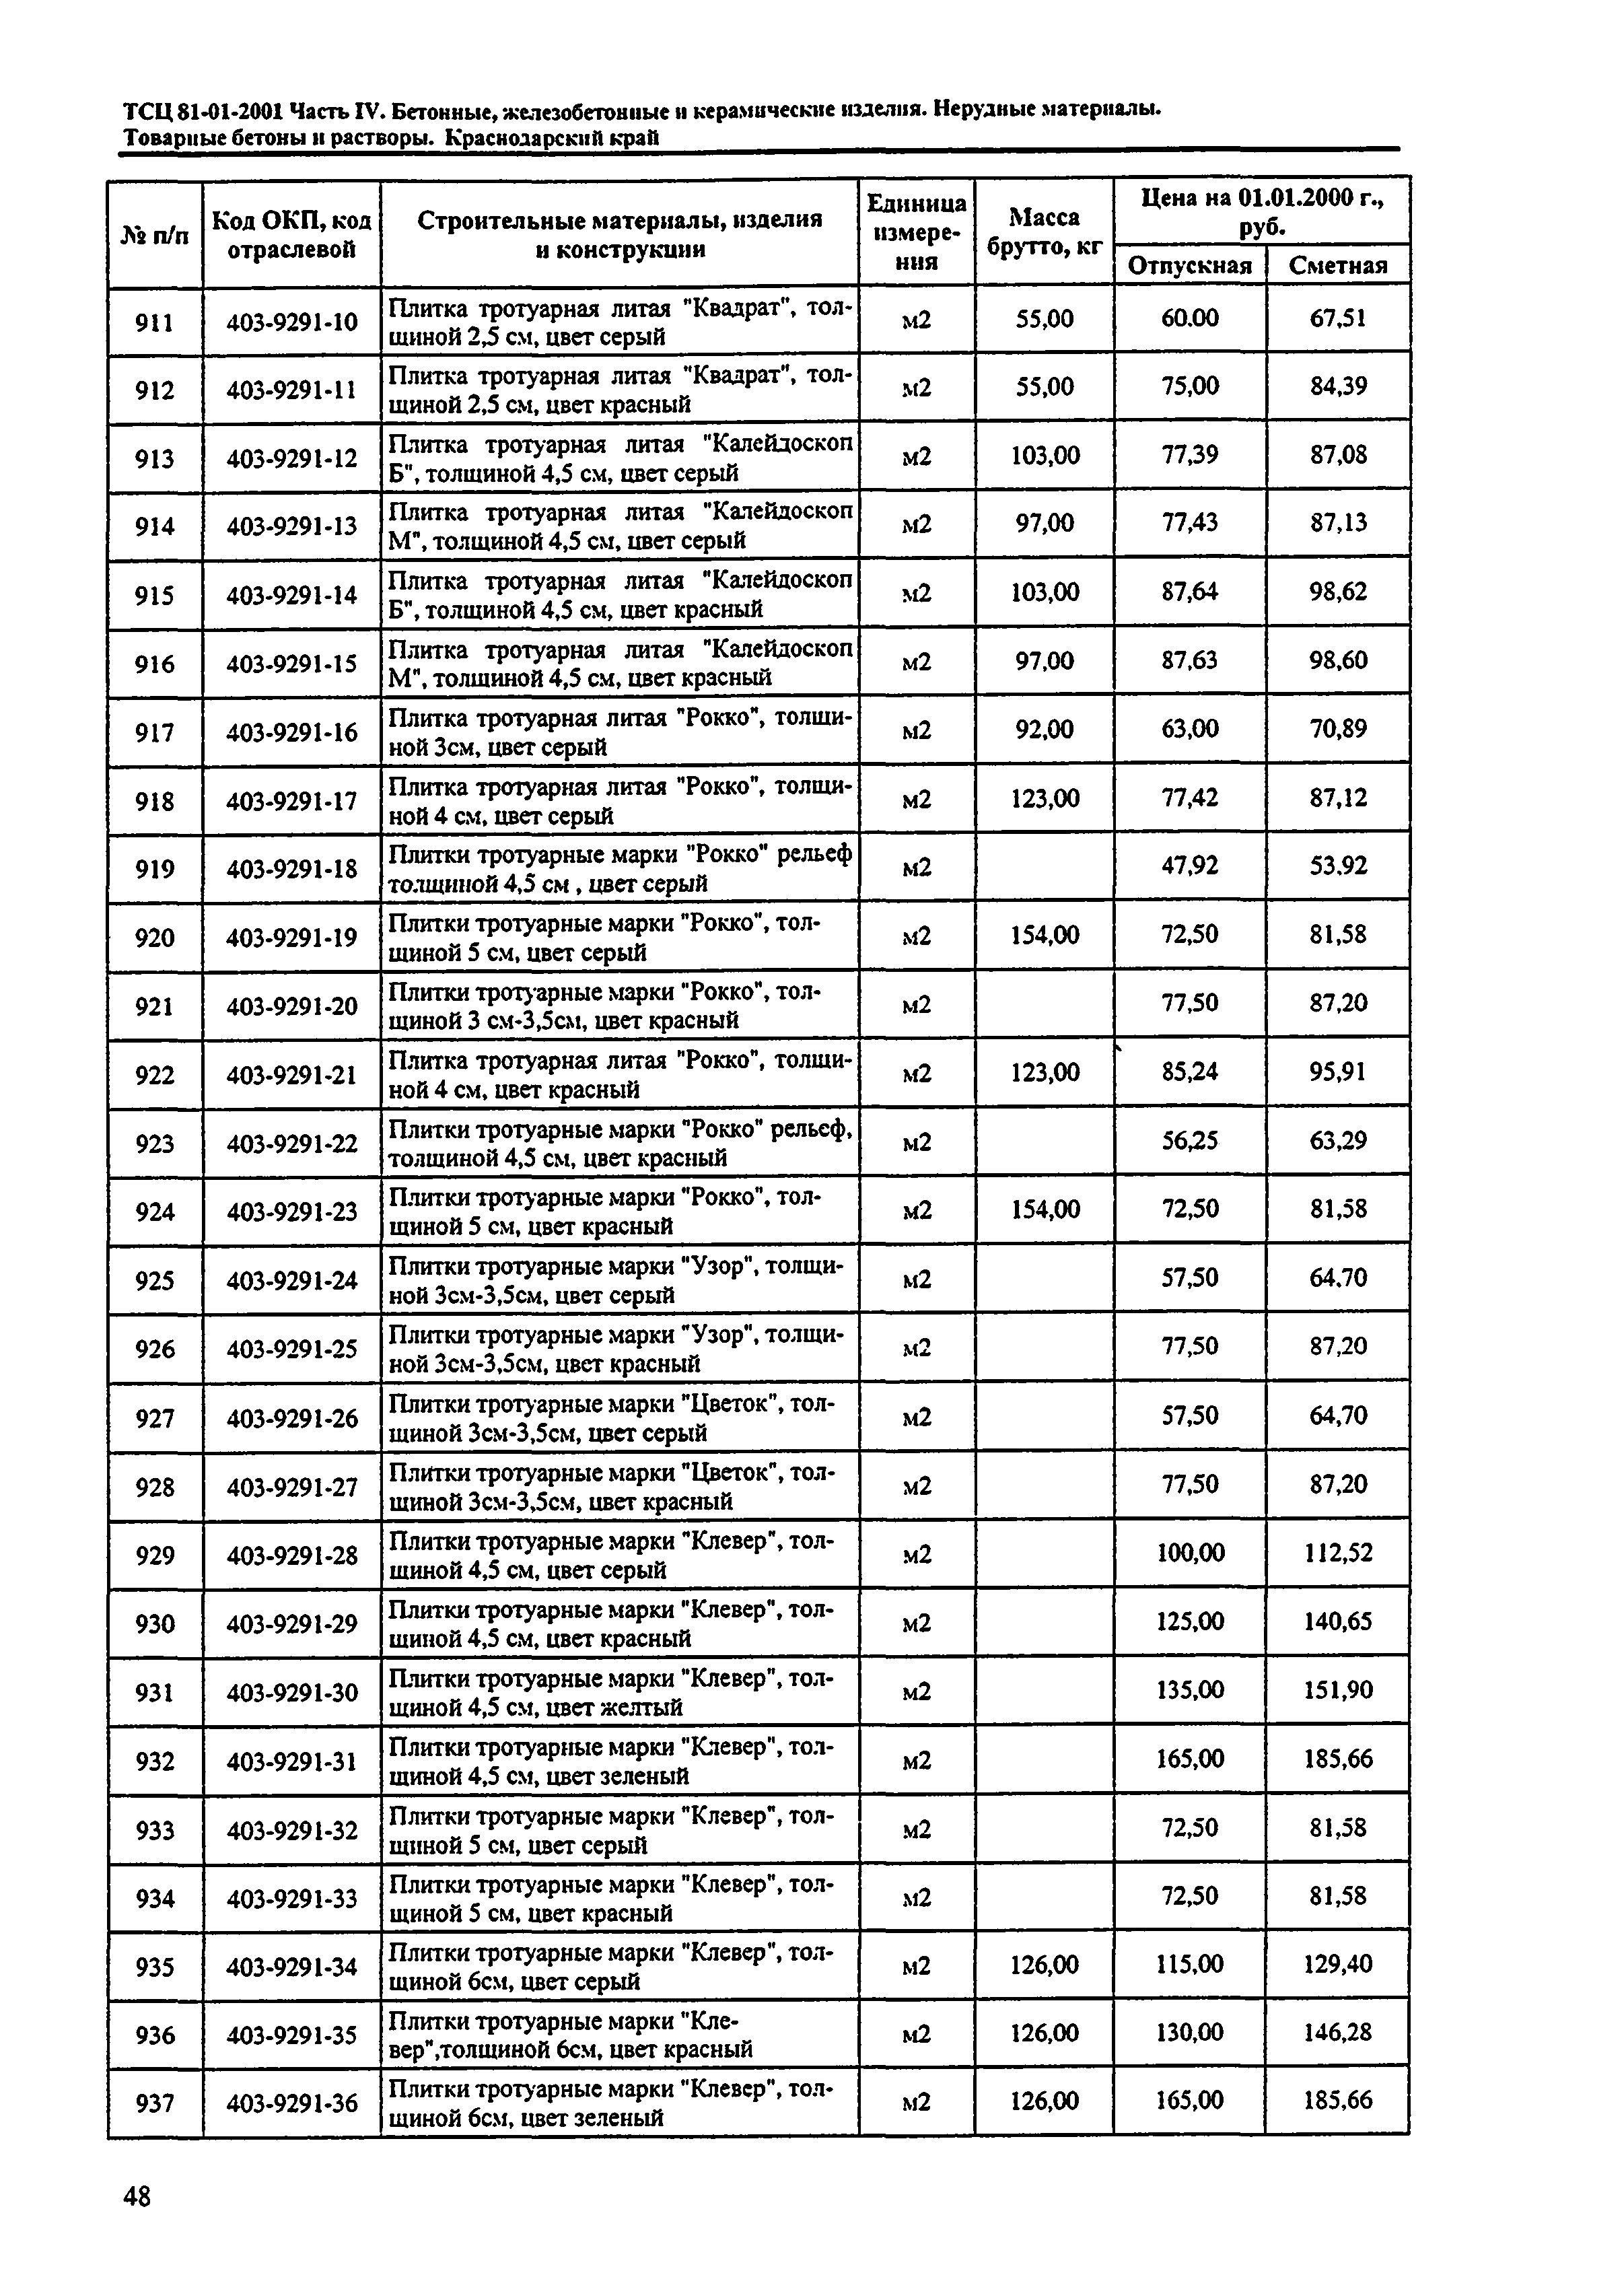 ТСЦ Краснодарского края 81-01-2001